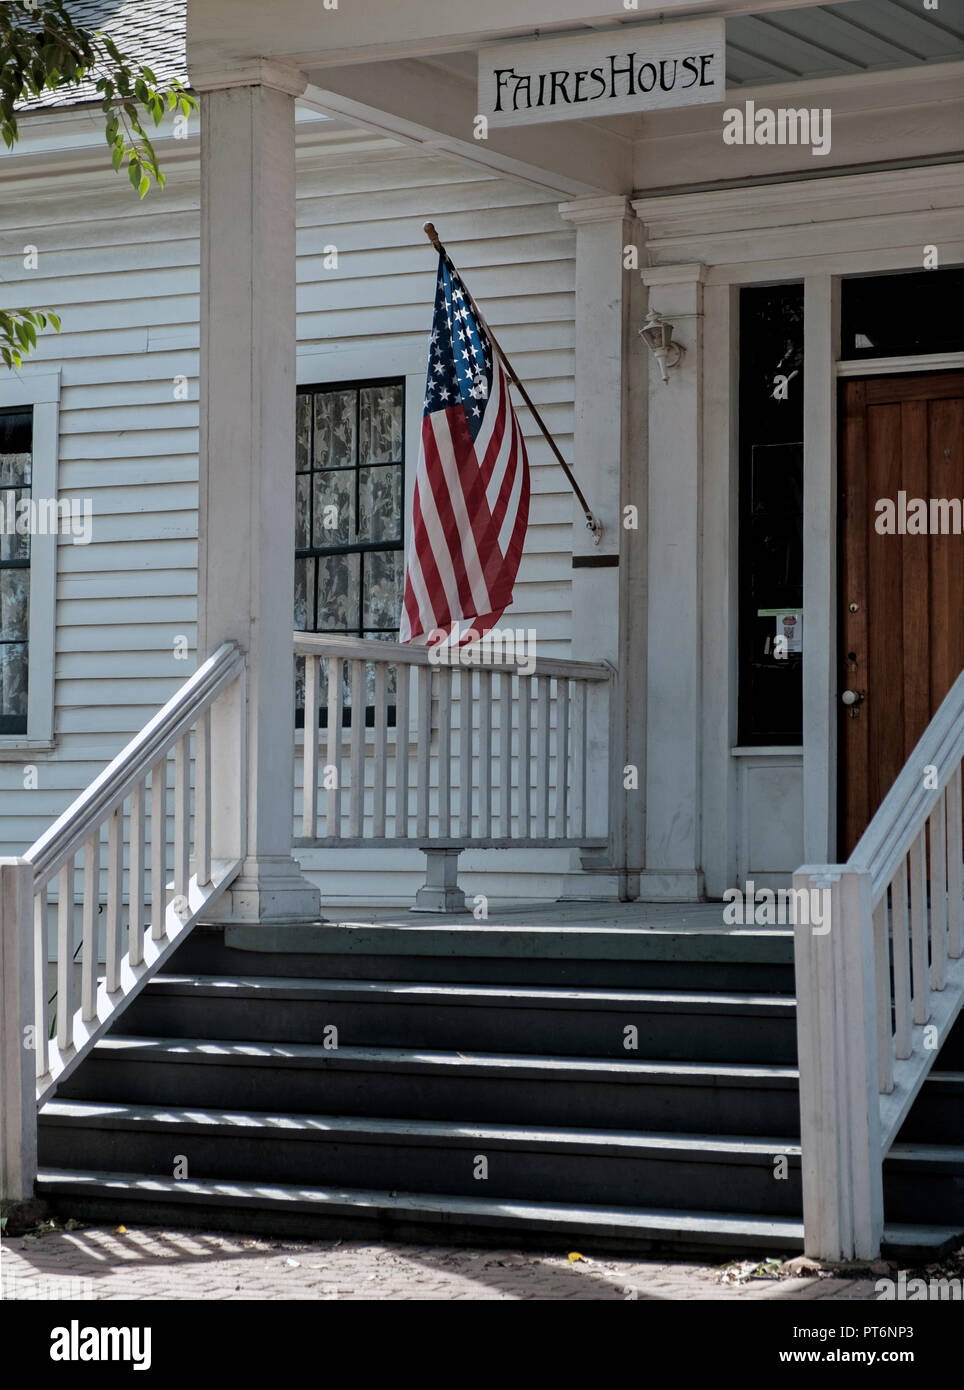 Vor dem Eingang des alten, weiß geschuppt Haus mit Stufen. Build 1854. Amerikanische Flagge auf erweiterten Pol. Messe Haus, Kastanie Square, Mckinney Texas. Stockfoto